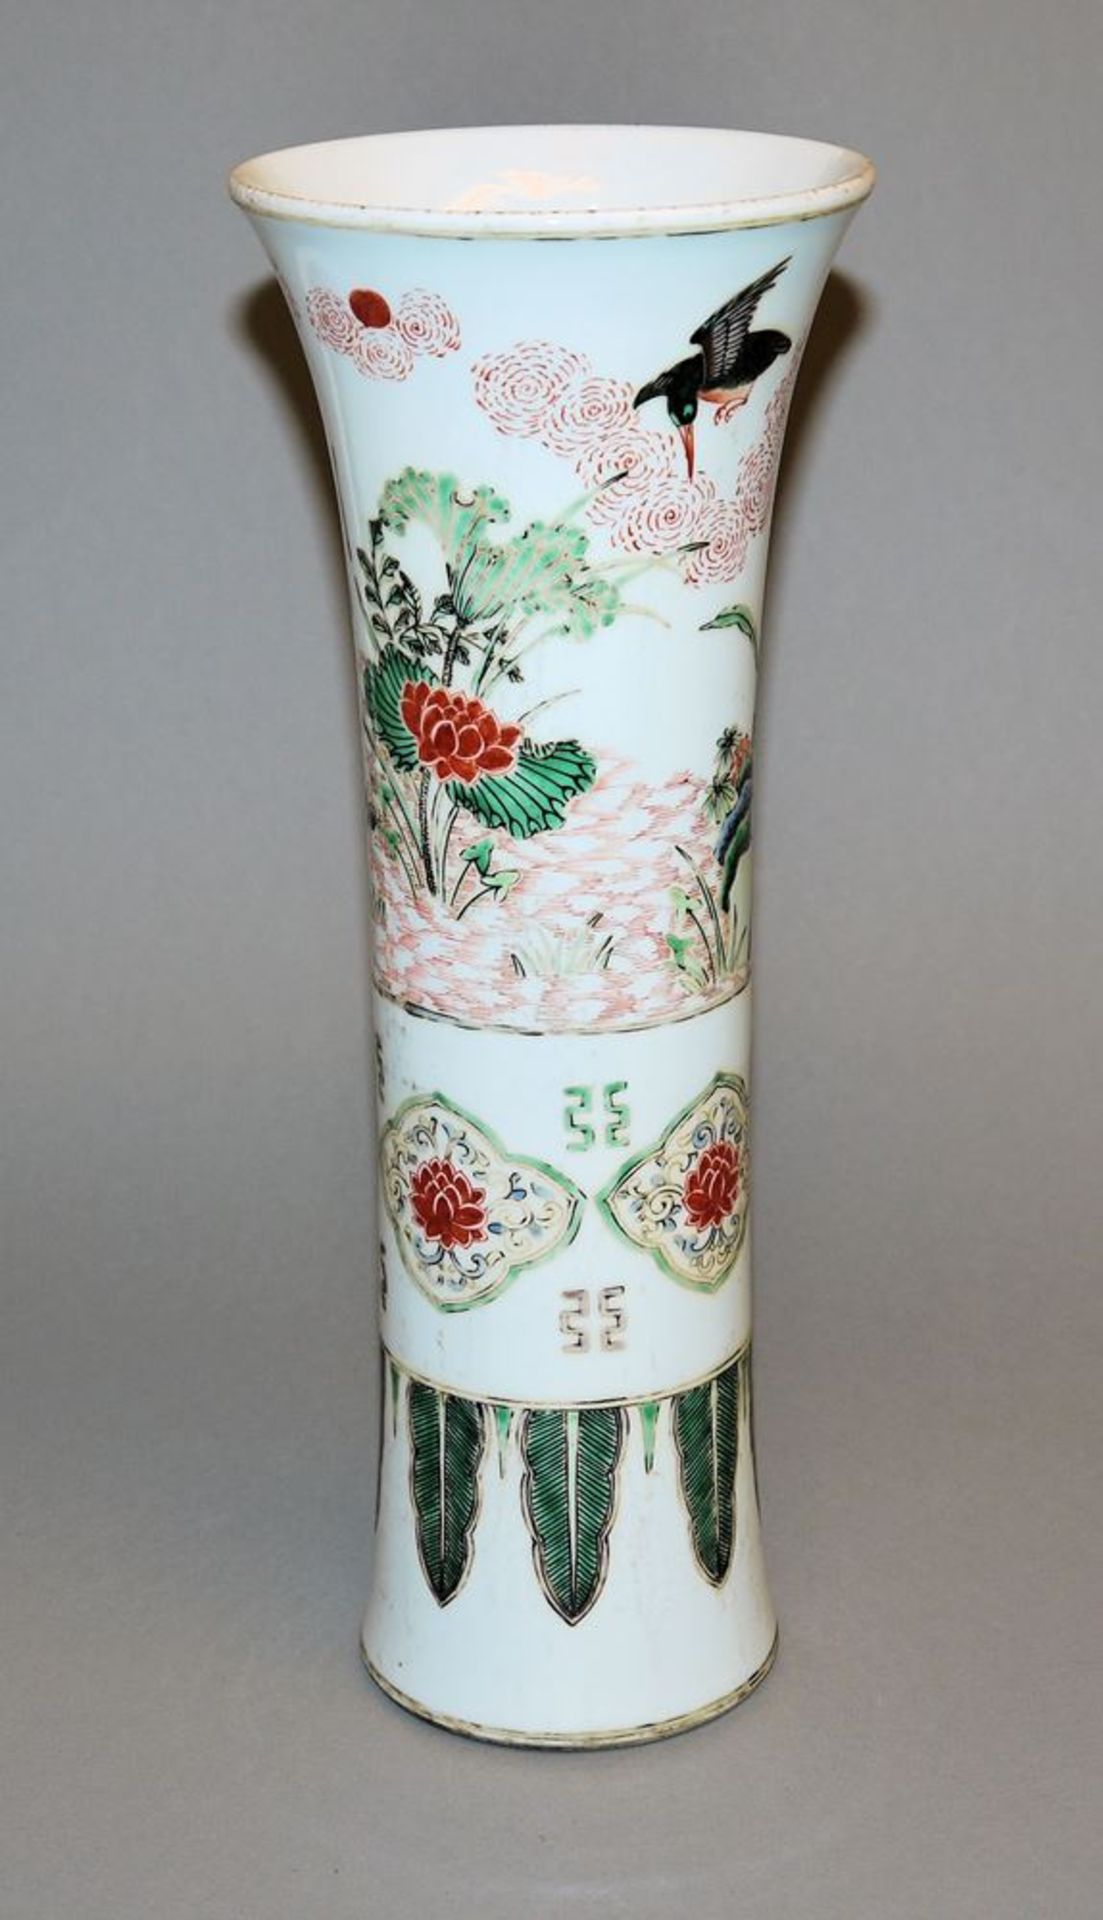 Gu-Vase in famille verte der Qing-Zeit, China 18.-19. Jh. - Bild 2 aus 5